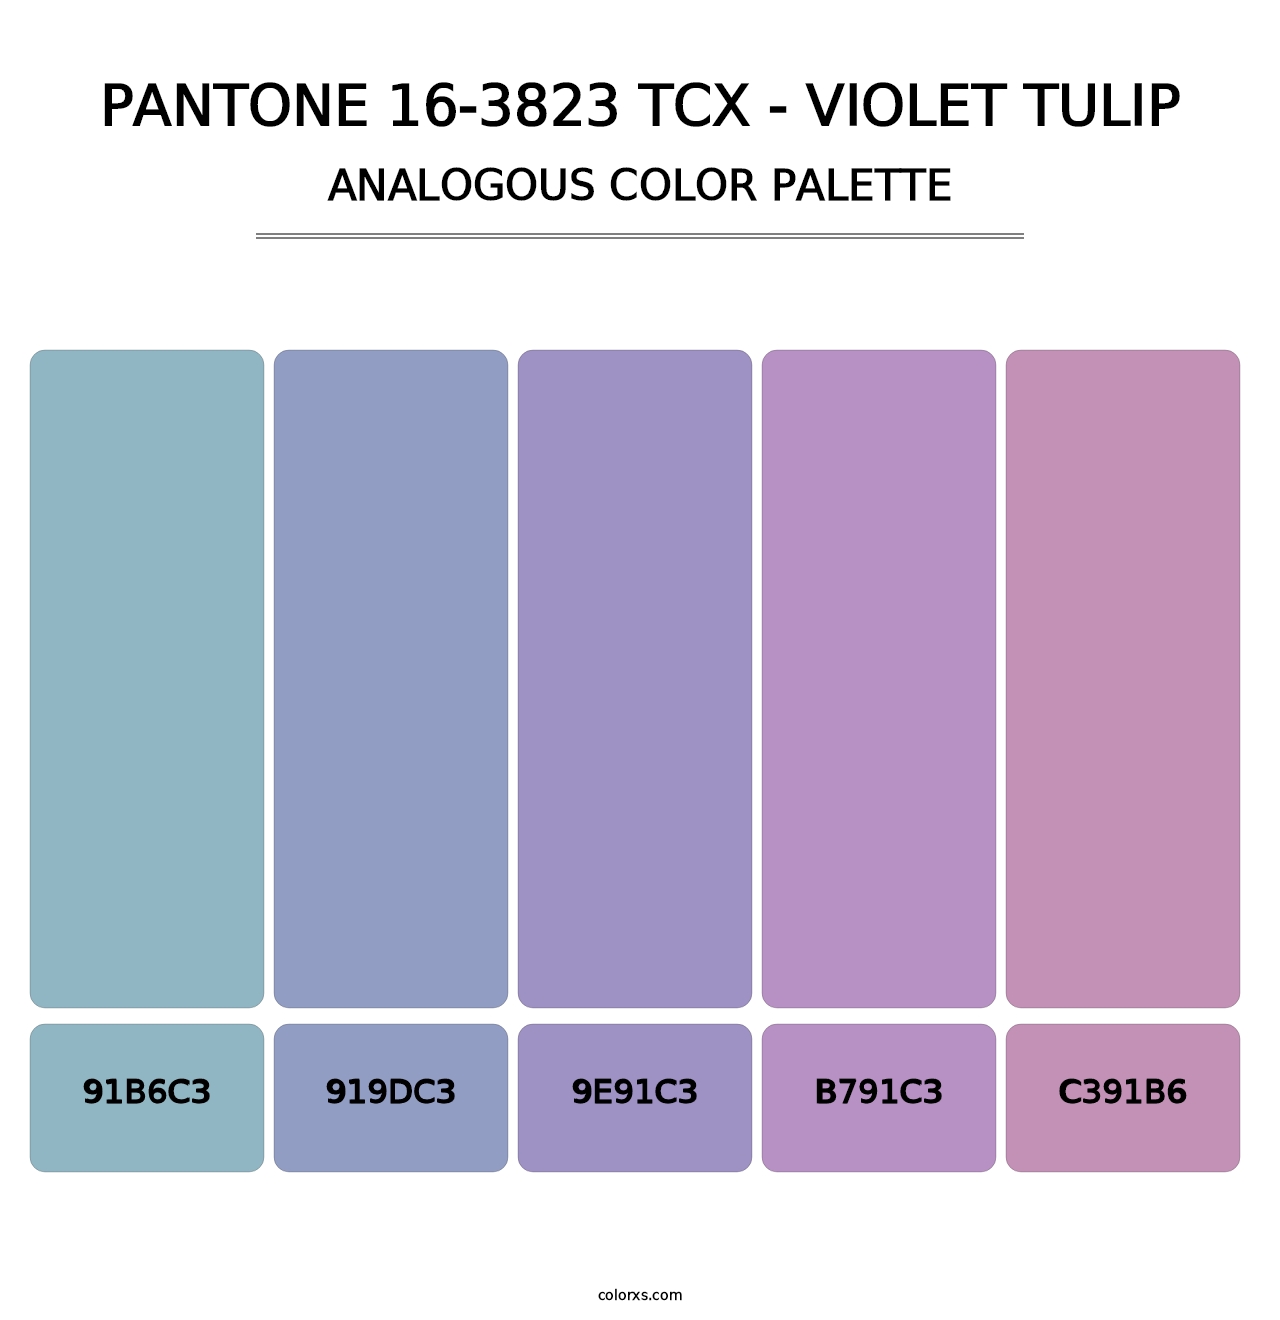 PANTONE 16-3823 TCX - Violet Tulip - Analogous Color Palette